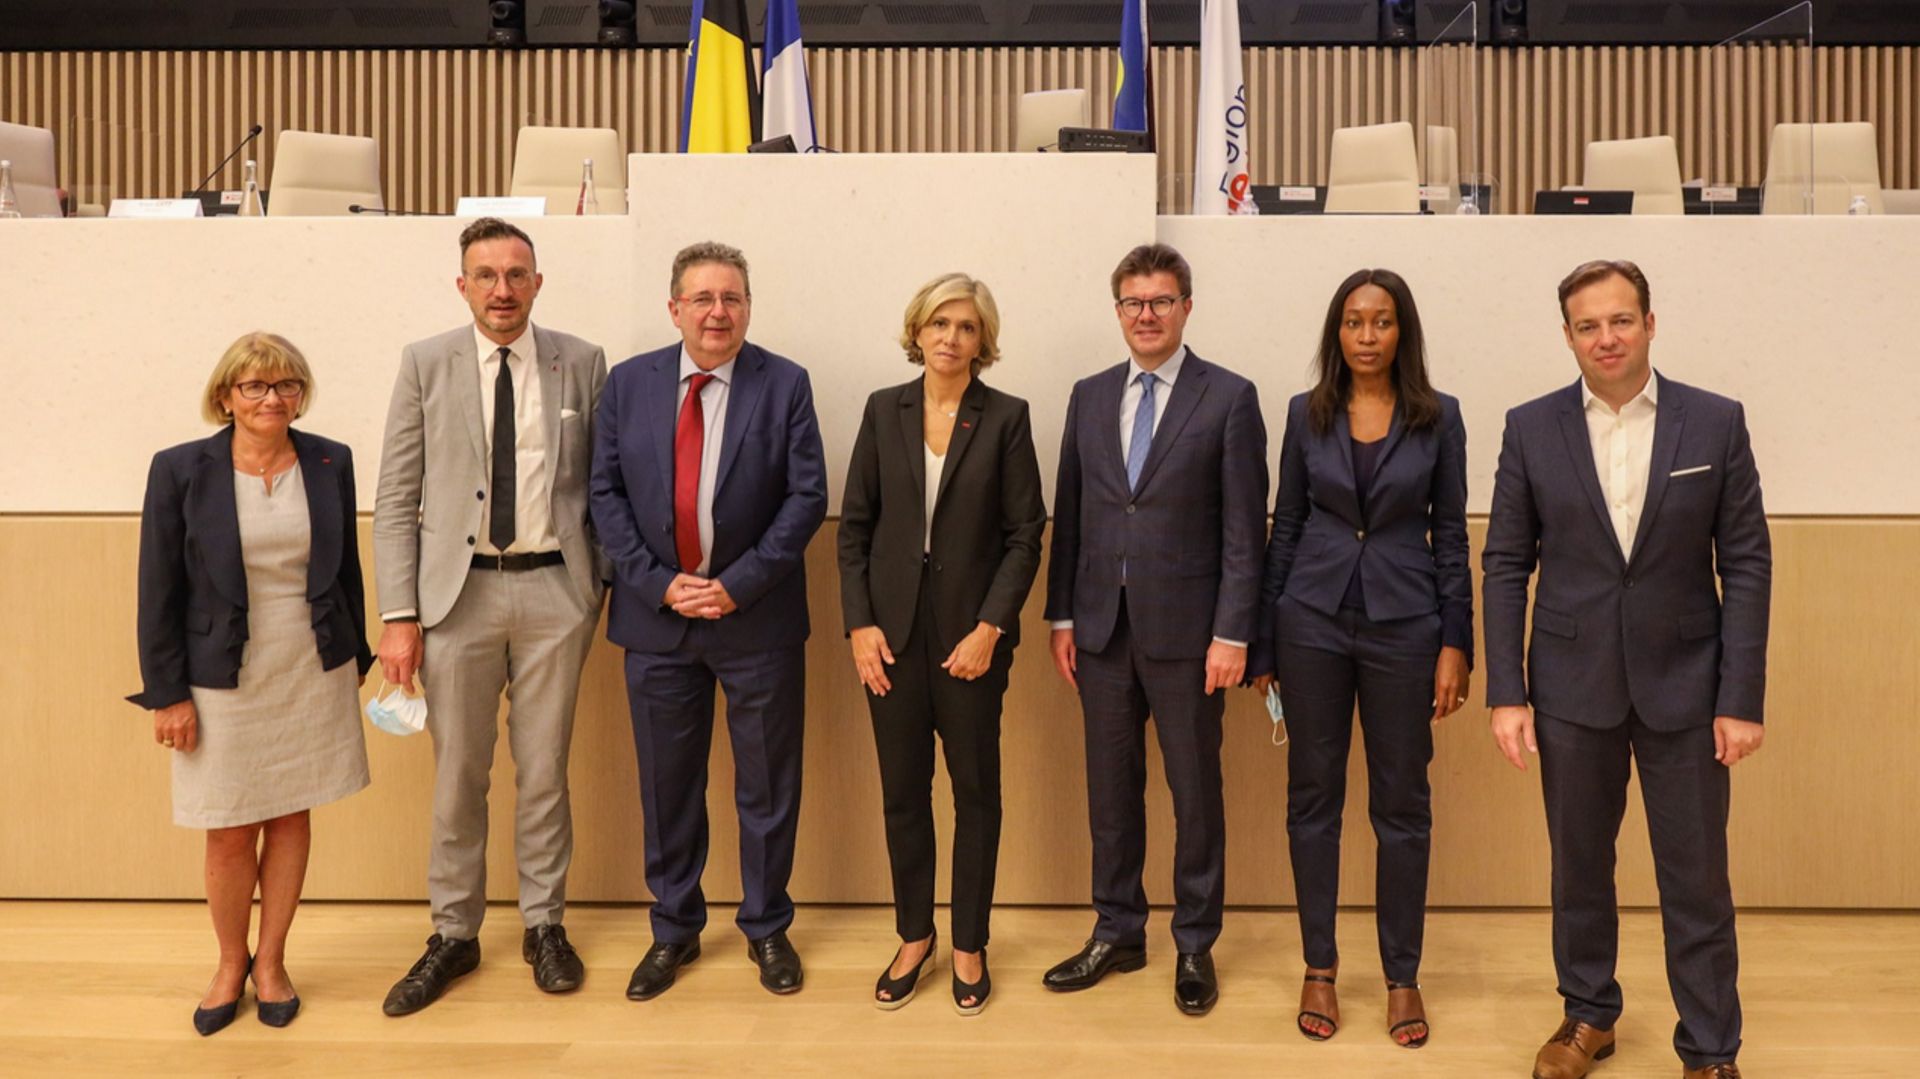 Au centre, le Ministre-président Rudi Vervoort et la présidente de la Région Île-de-France, Valérie Pécresse, accompagnés de plusieurs représentants régionaux.